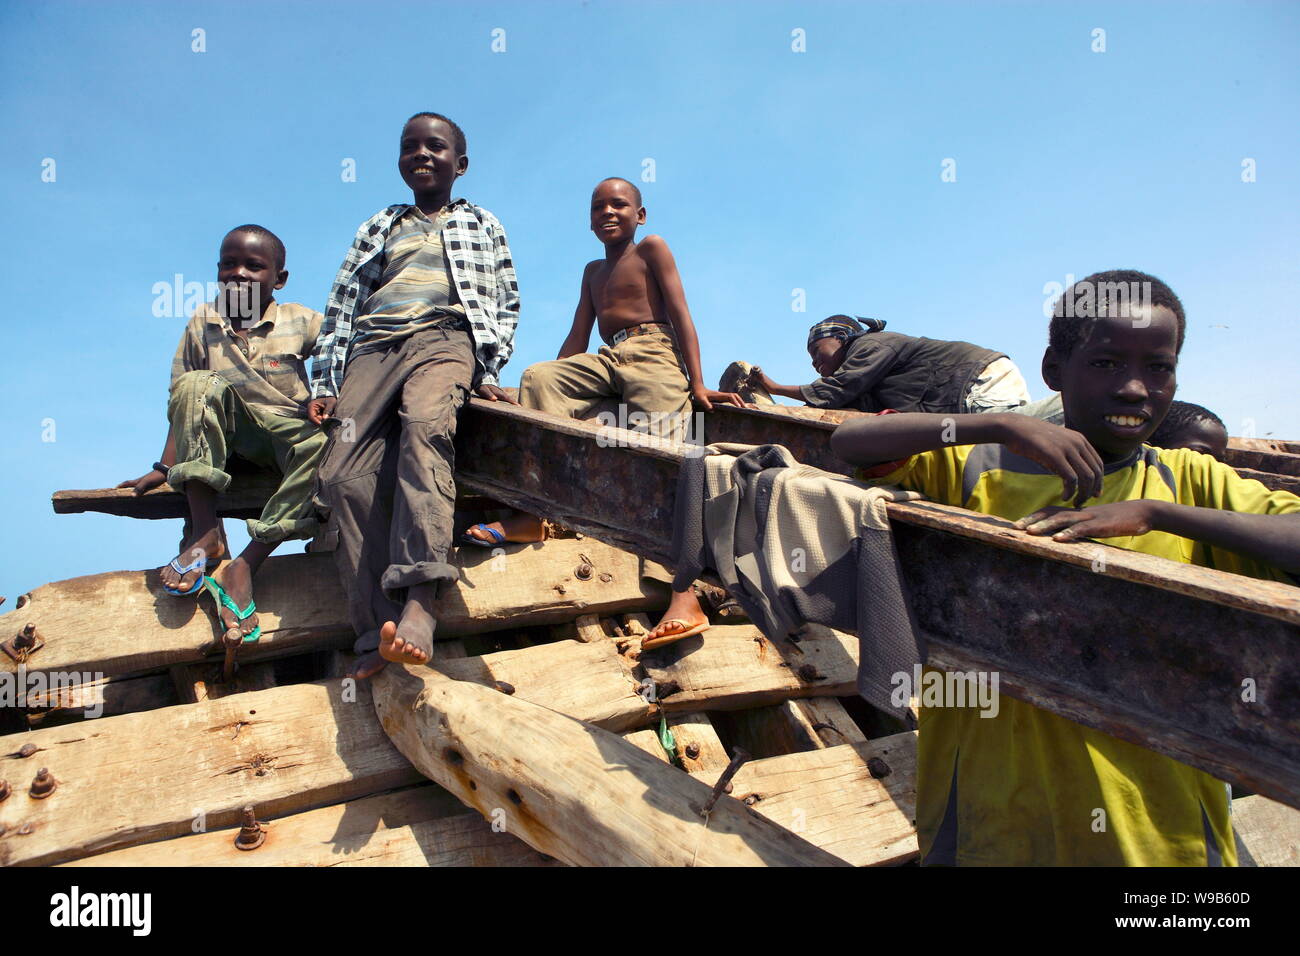 Die somalische Kinder spielen an einem Dock in Bosaso (Boosaaso), Somalia, 20. Januar 2009. Zwei junge chinesische Journalisten wurden im Januar 2009 nach Somalia geschickt Stockfoto